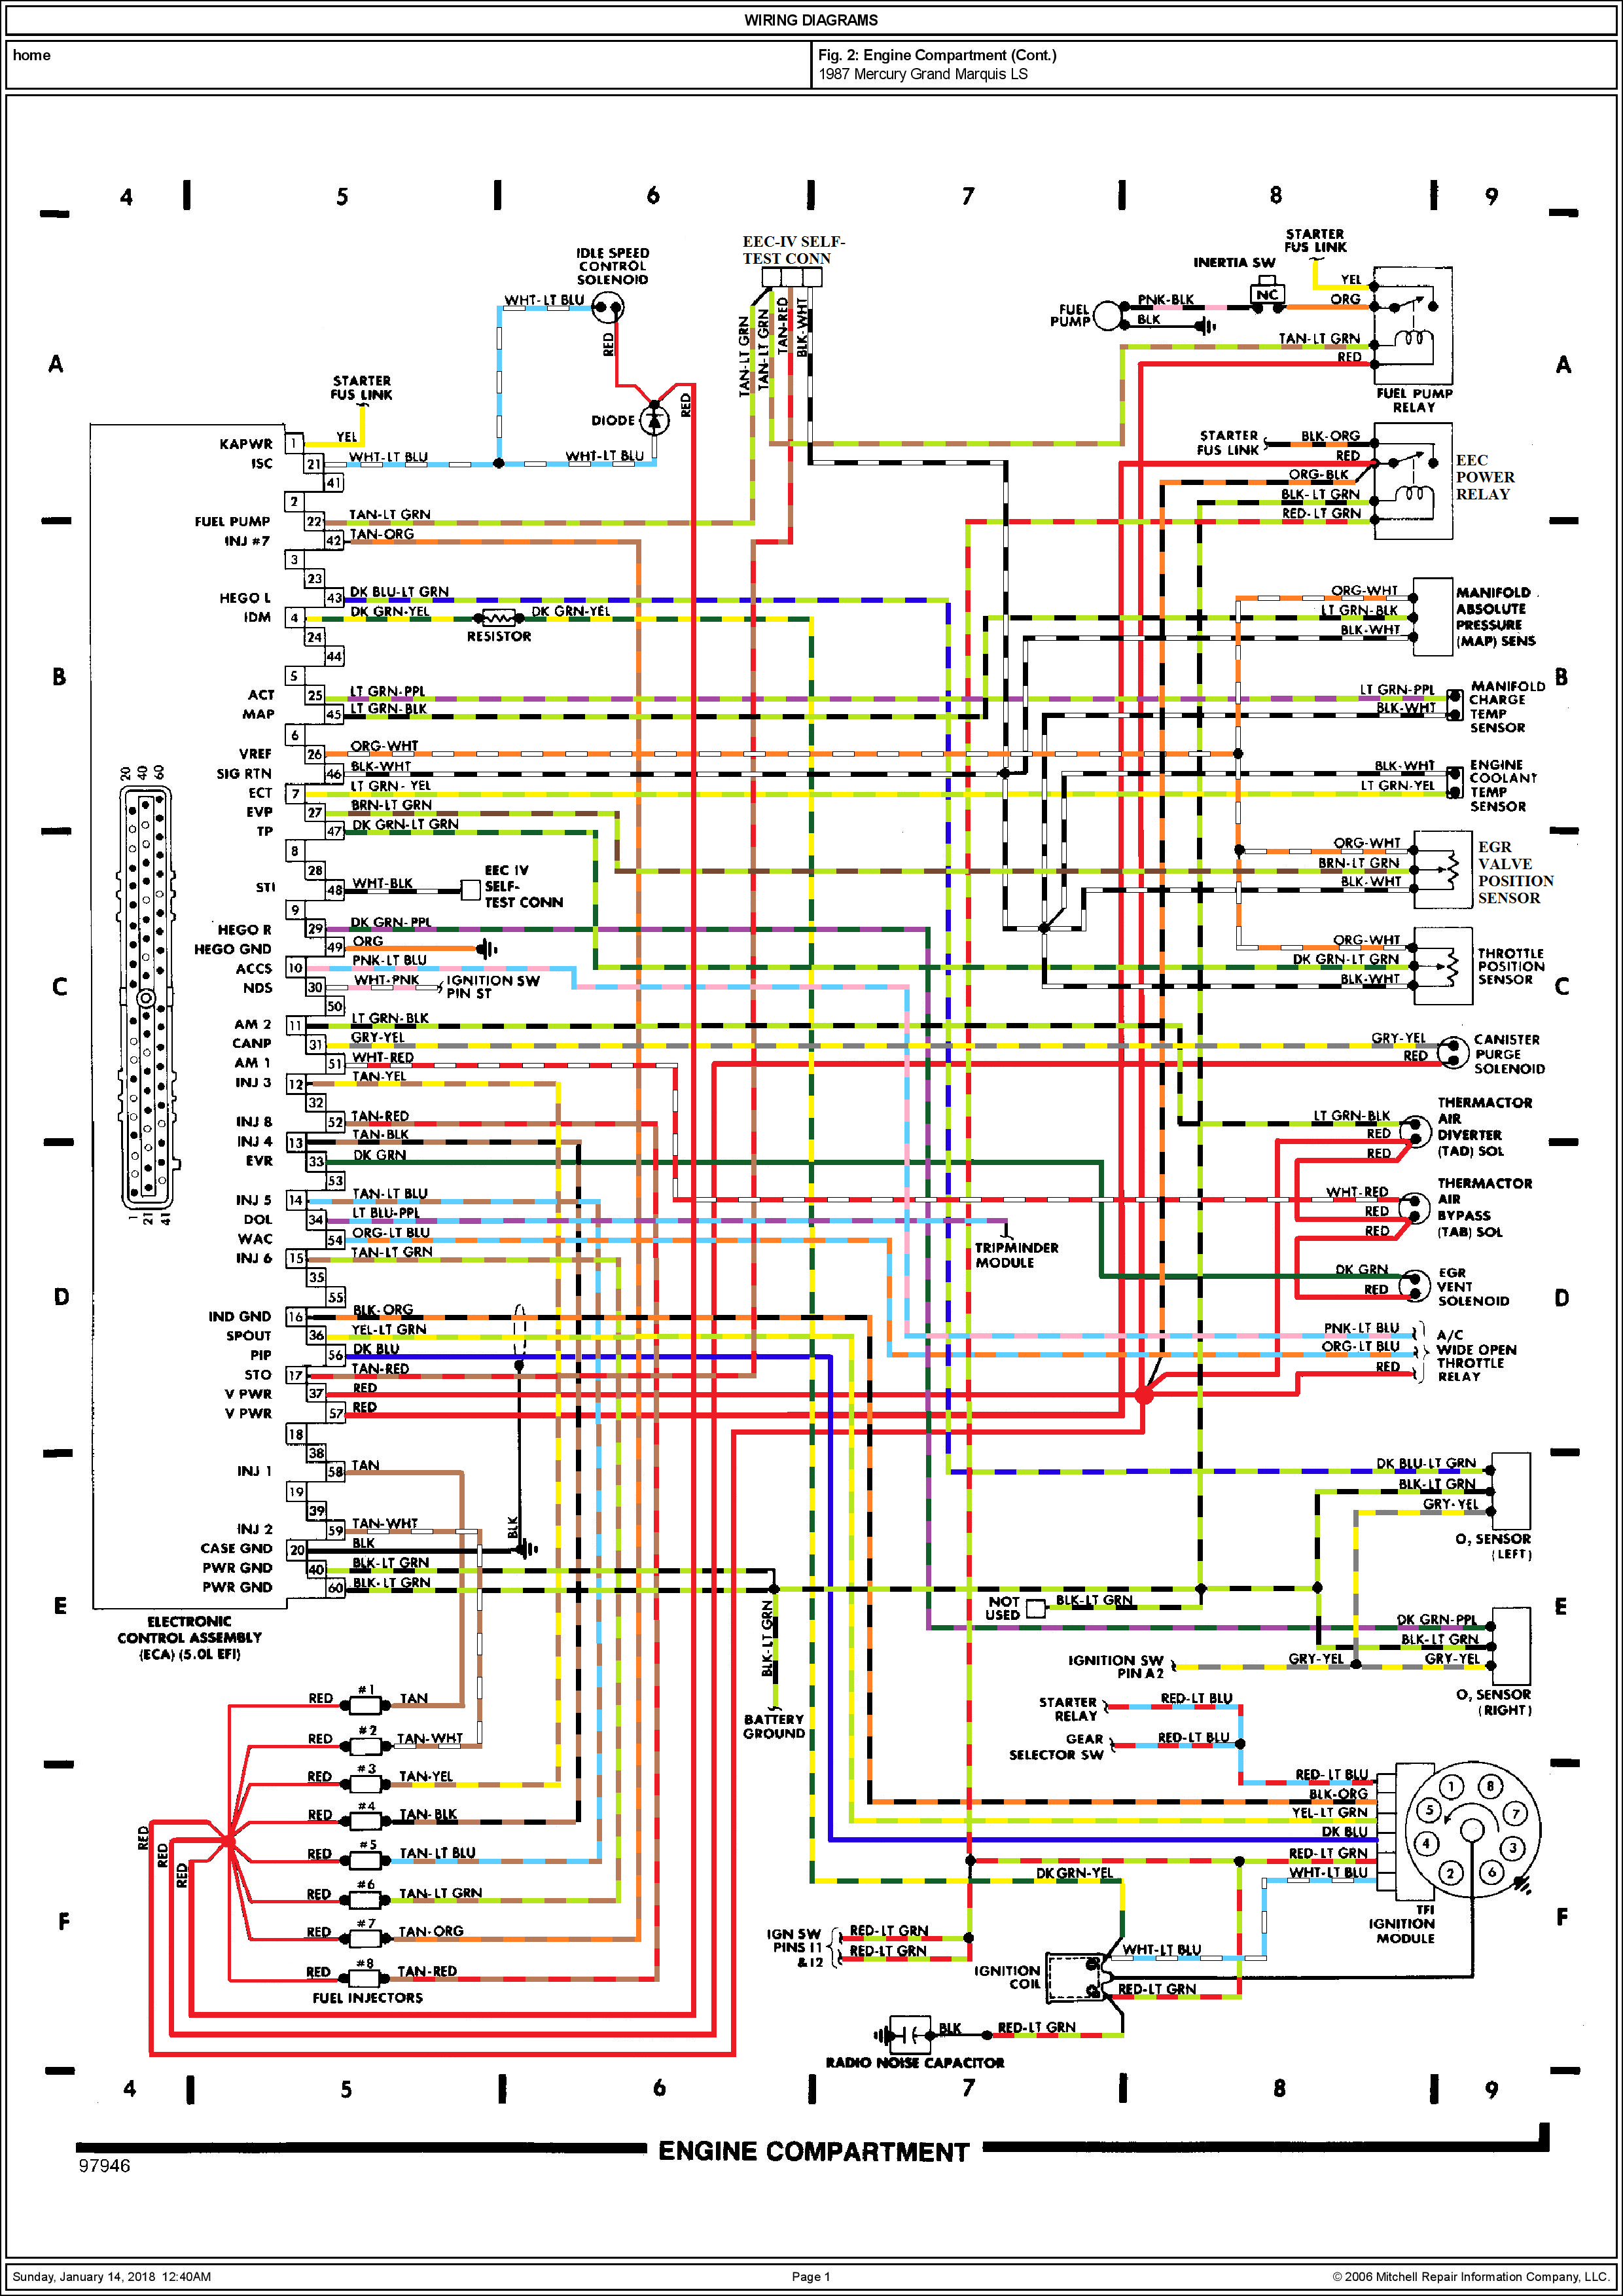 Схема электропроводки на Mercury Grand Marquis/Crown Victoria 83-87(89) датчик, схемы, sensor, только, питание, схеме, Light, зажигания, лампы, Switch, положении, питания, solenoid, аккумулятора, которые, управления, который, замок, света, интернете